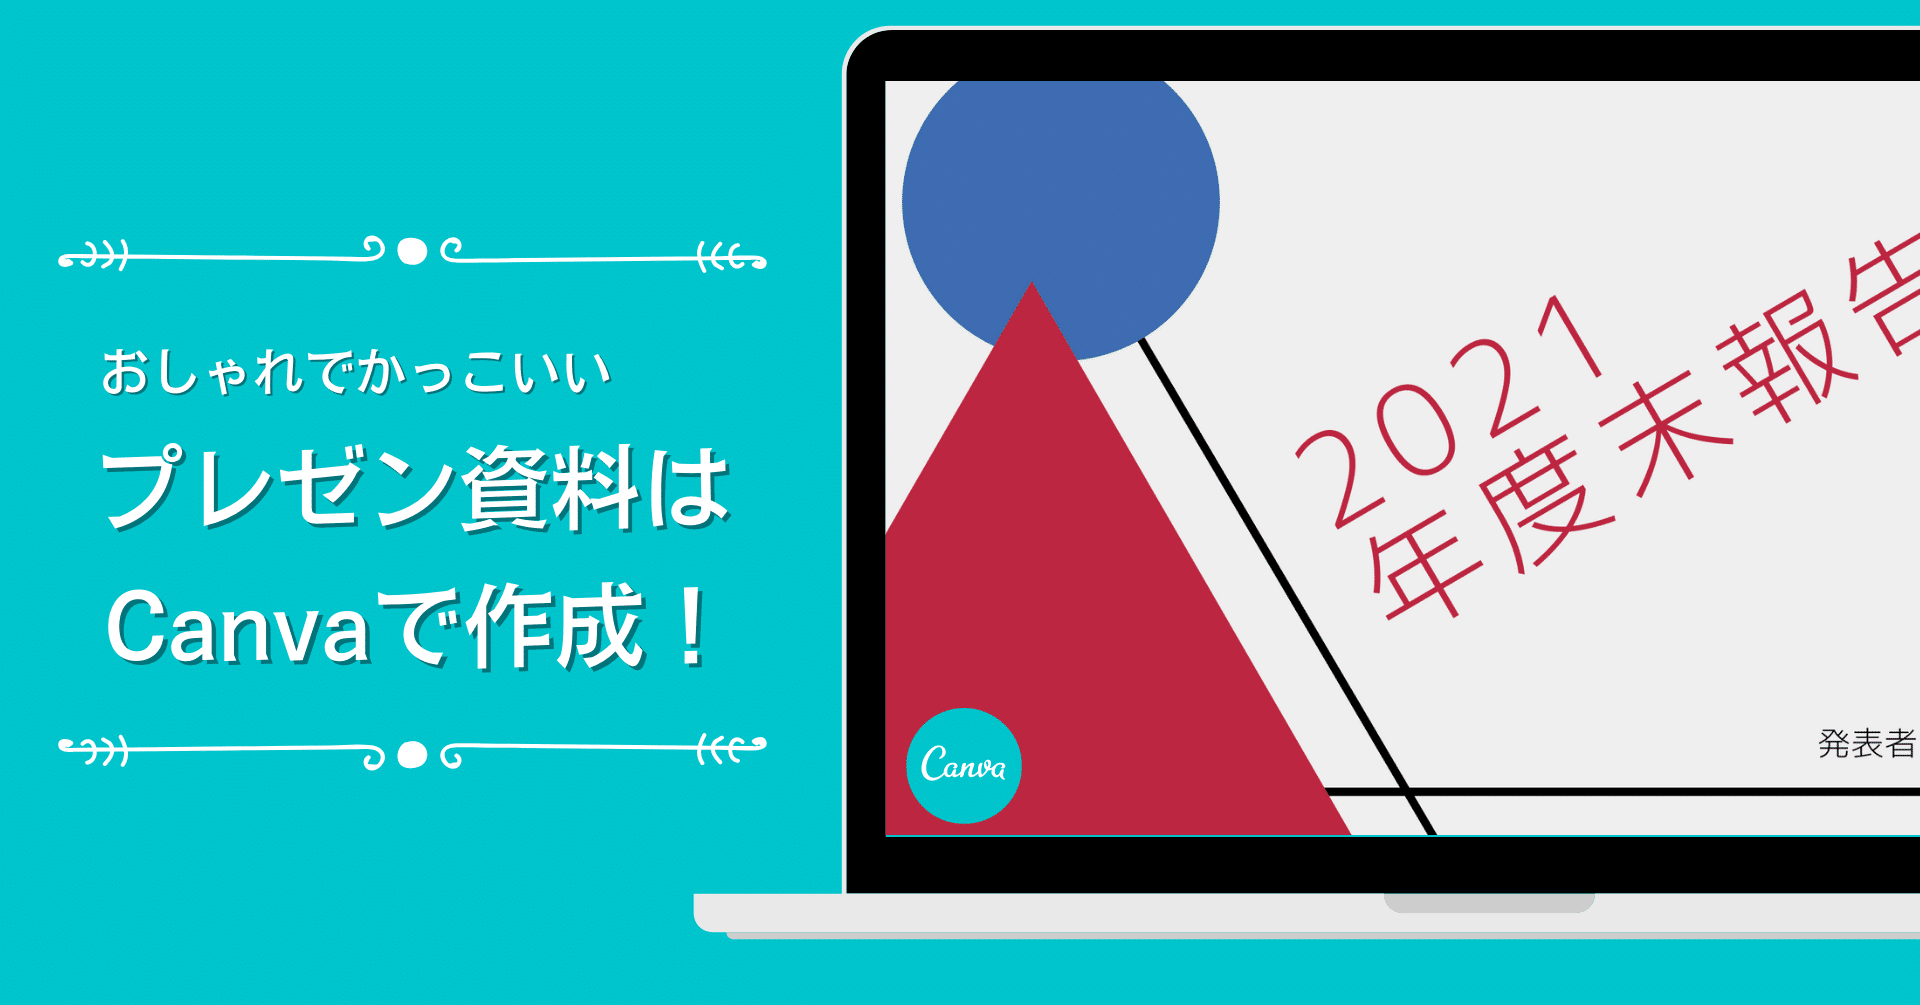 ビジネスユーザー必見 Canvaで おしゃれでかっこいいプレゼンテーション資料を作る5つのコツ Canva Japan キャンバ日本公式note Note